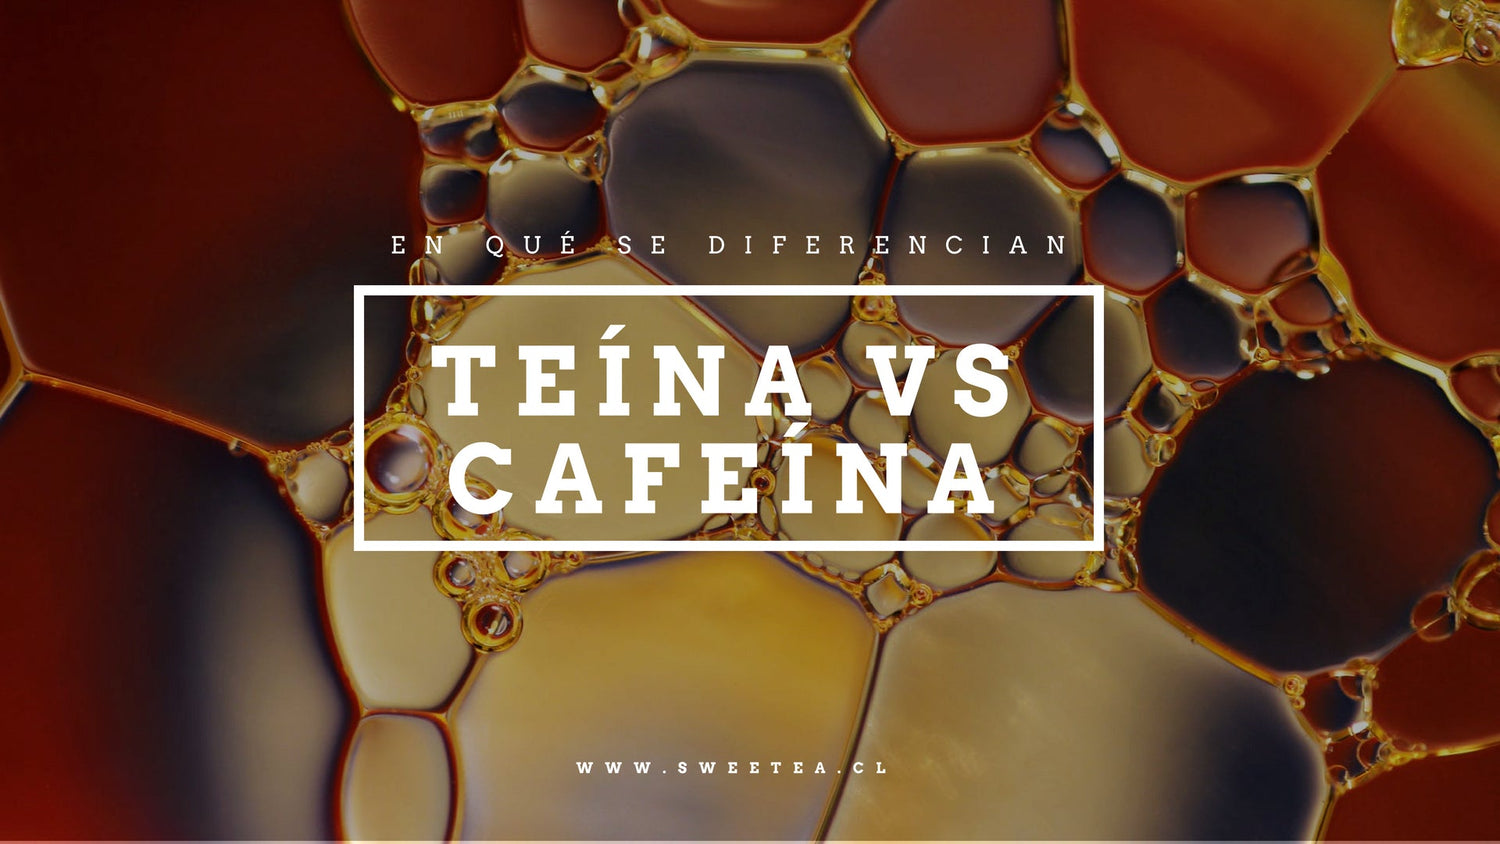 La diferencia entre la teína y la cafeína